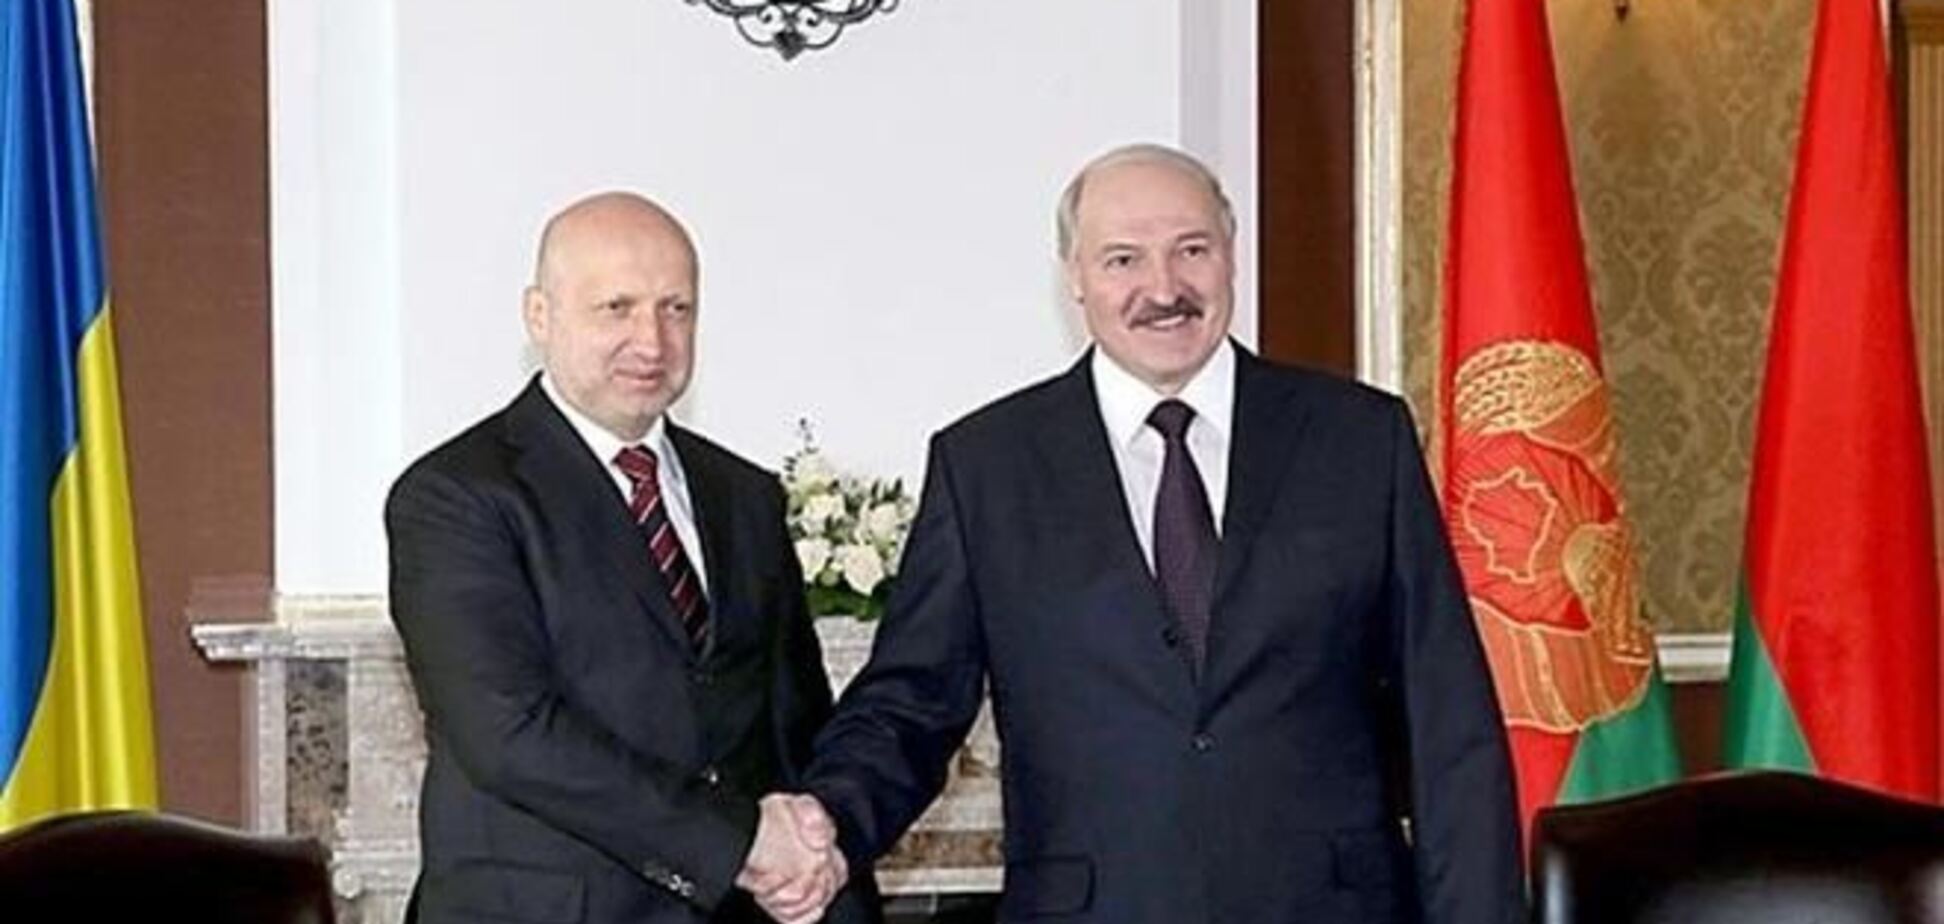 Турчинов встречается с Лукашенко 